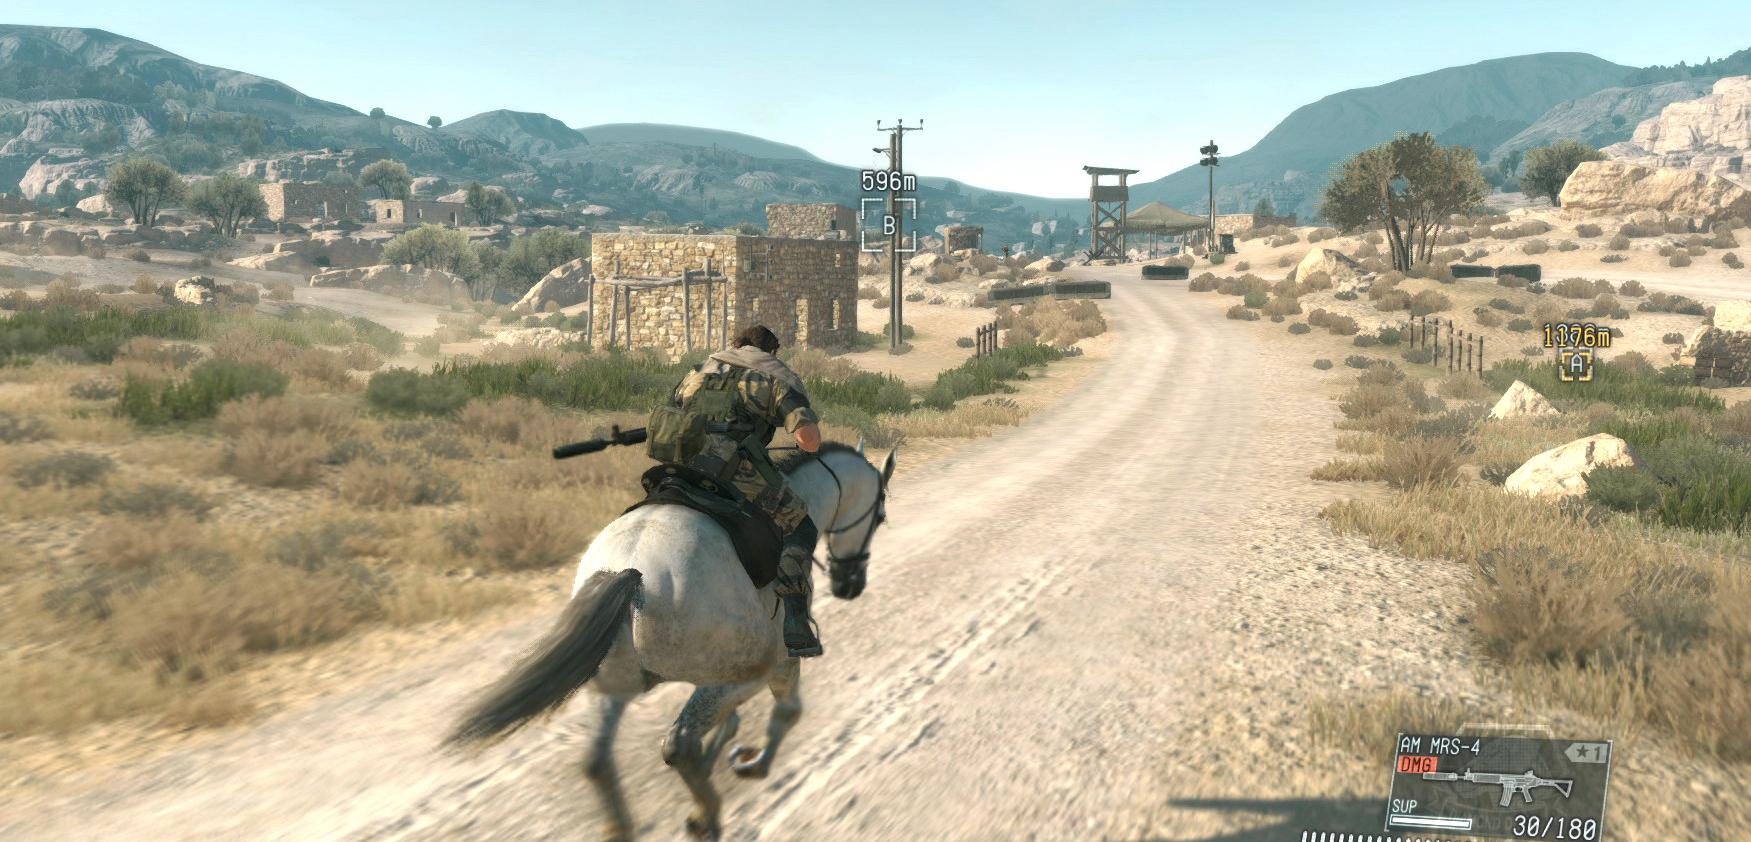 Grafika w Metal Gear Solid V pod lupą – porównanie wersji na PS4 i XONE